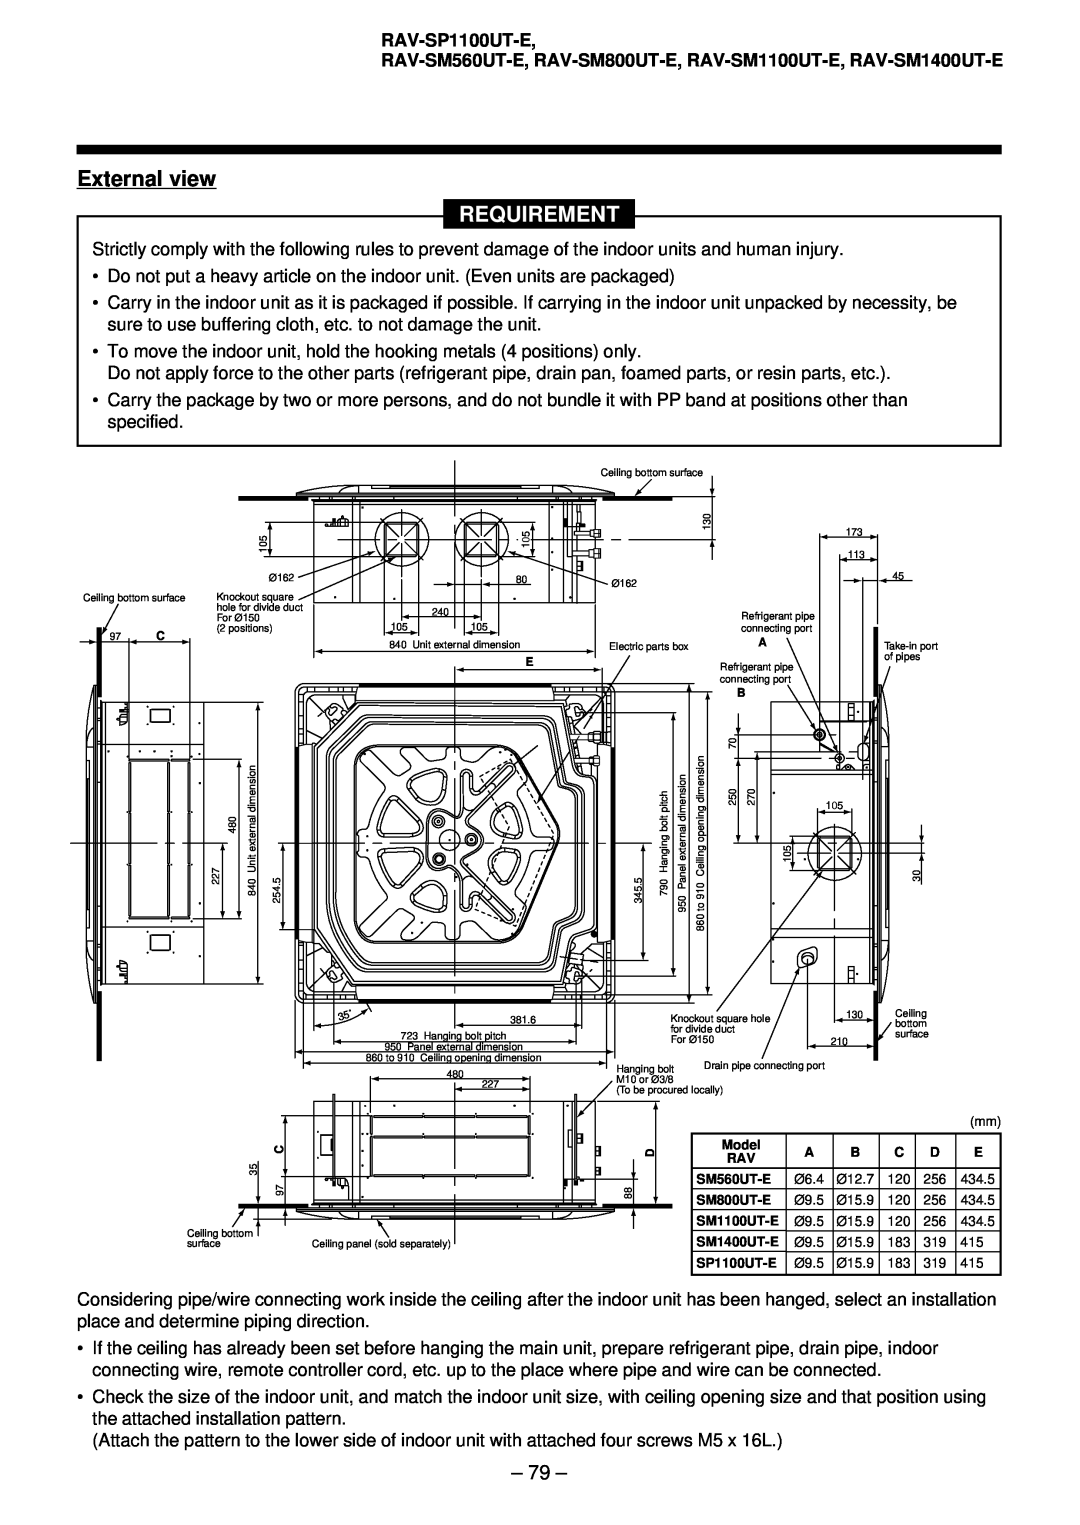 Toshiba RAV-SM561AT-E, RAV-SM1101AT-E, RAV-SM1401AT-E, RAV-SM801AT-E External view, Requirement, RAV-SP1100UT-E 